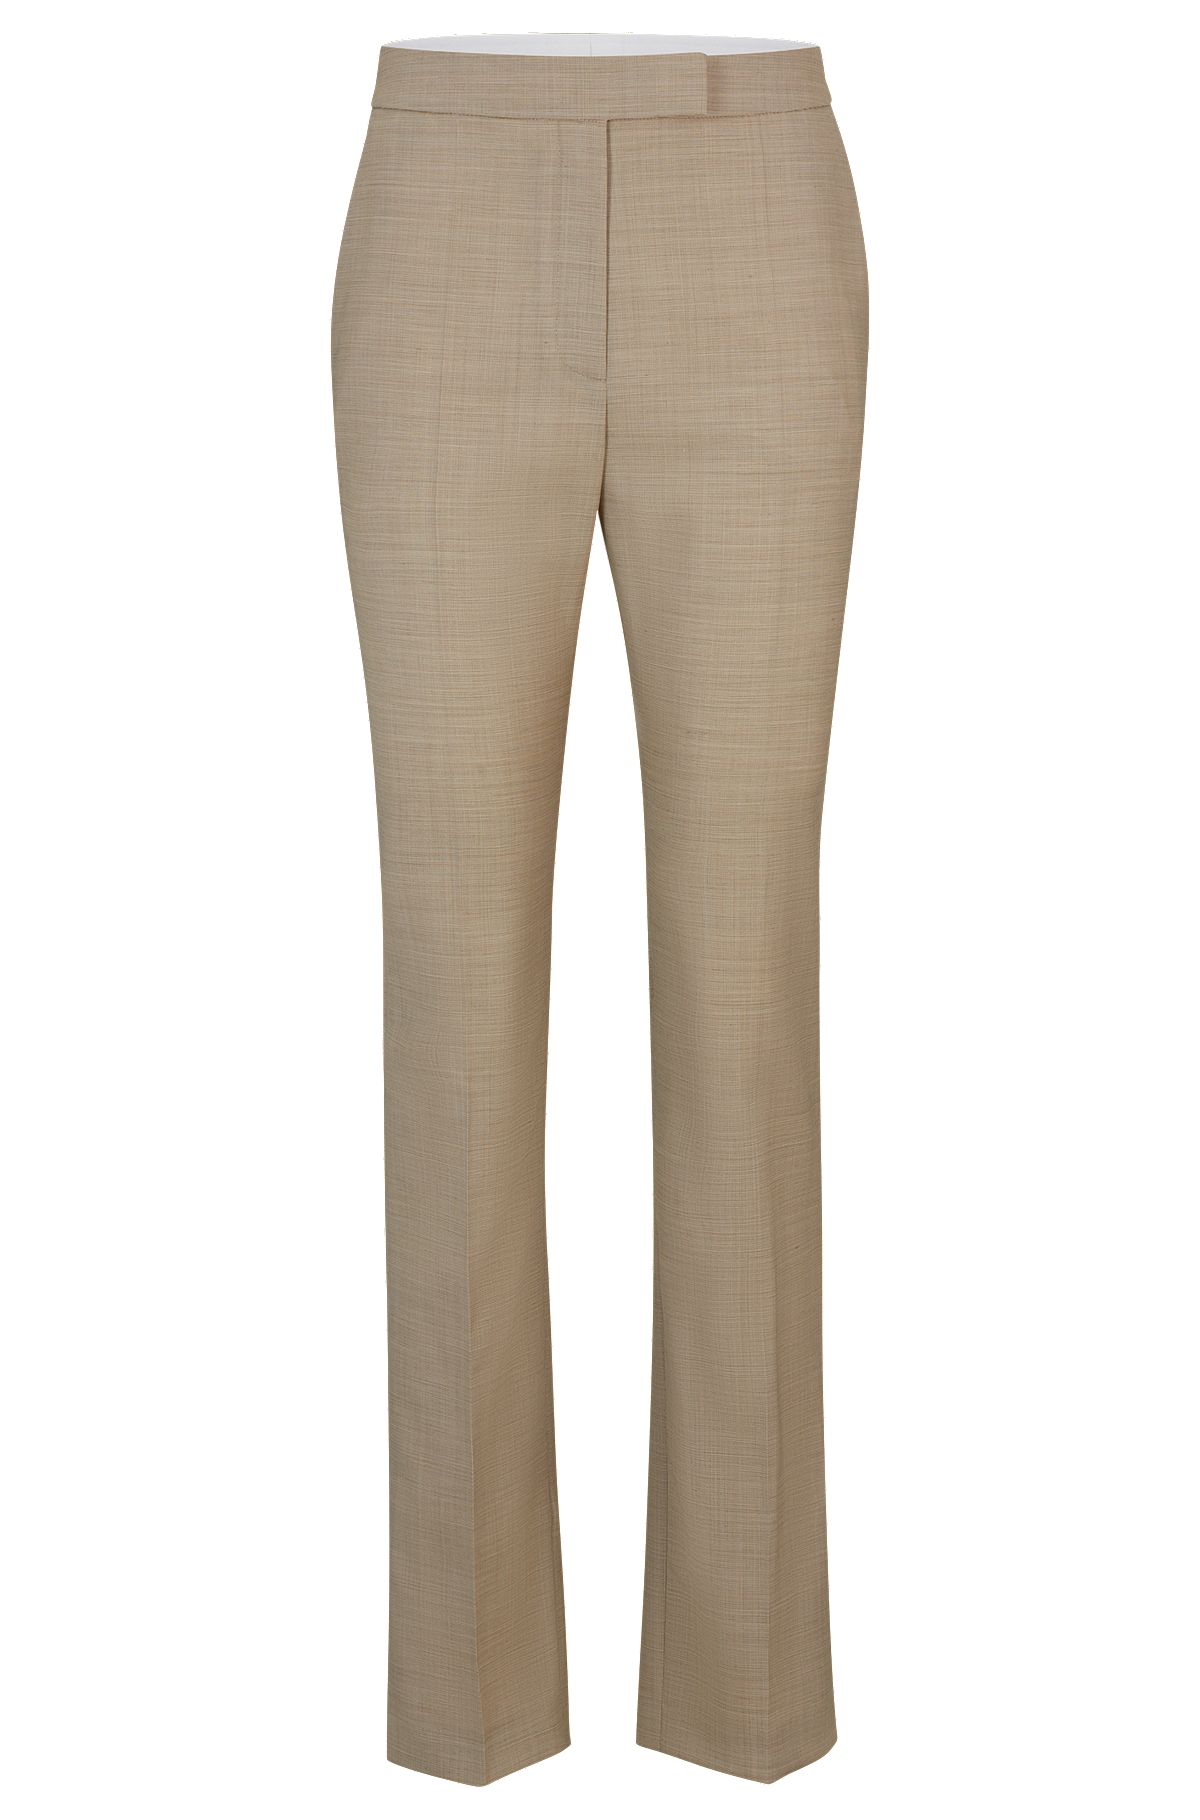 Pantalones slim fit con estructura de piel de tiburón de lana virgen italiana, Beige claro